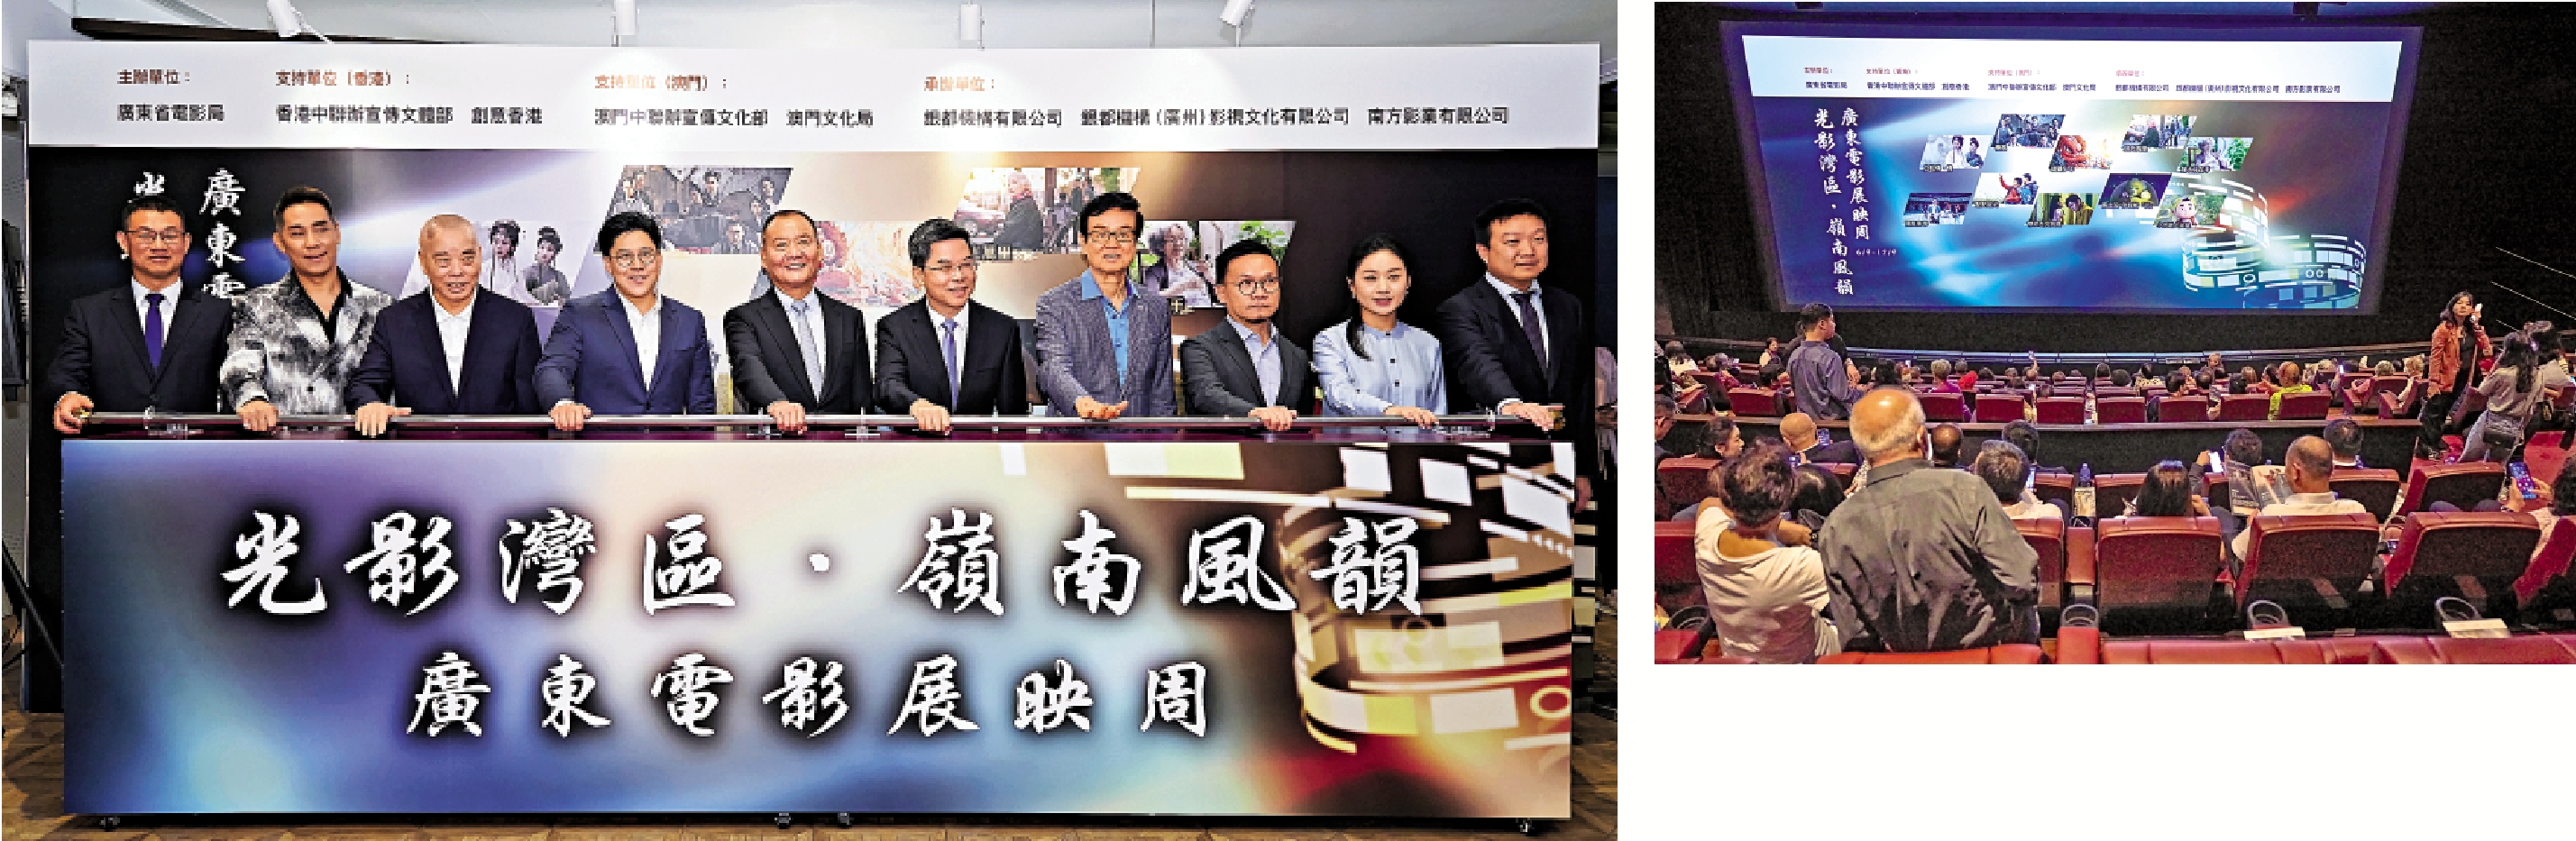 　　左圖：一眾嘉賓出席廣東電影香港展映周開幕禮。右圖：開幕電影《白蛇傳·情》。